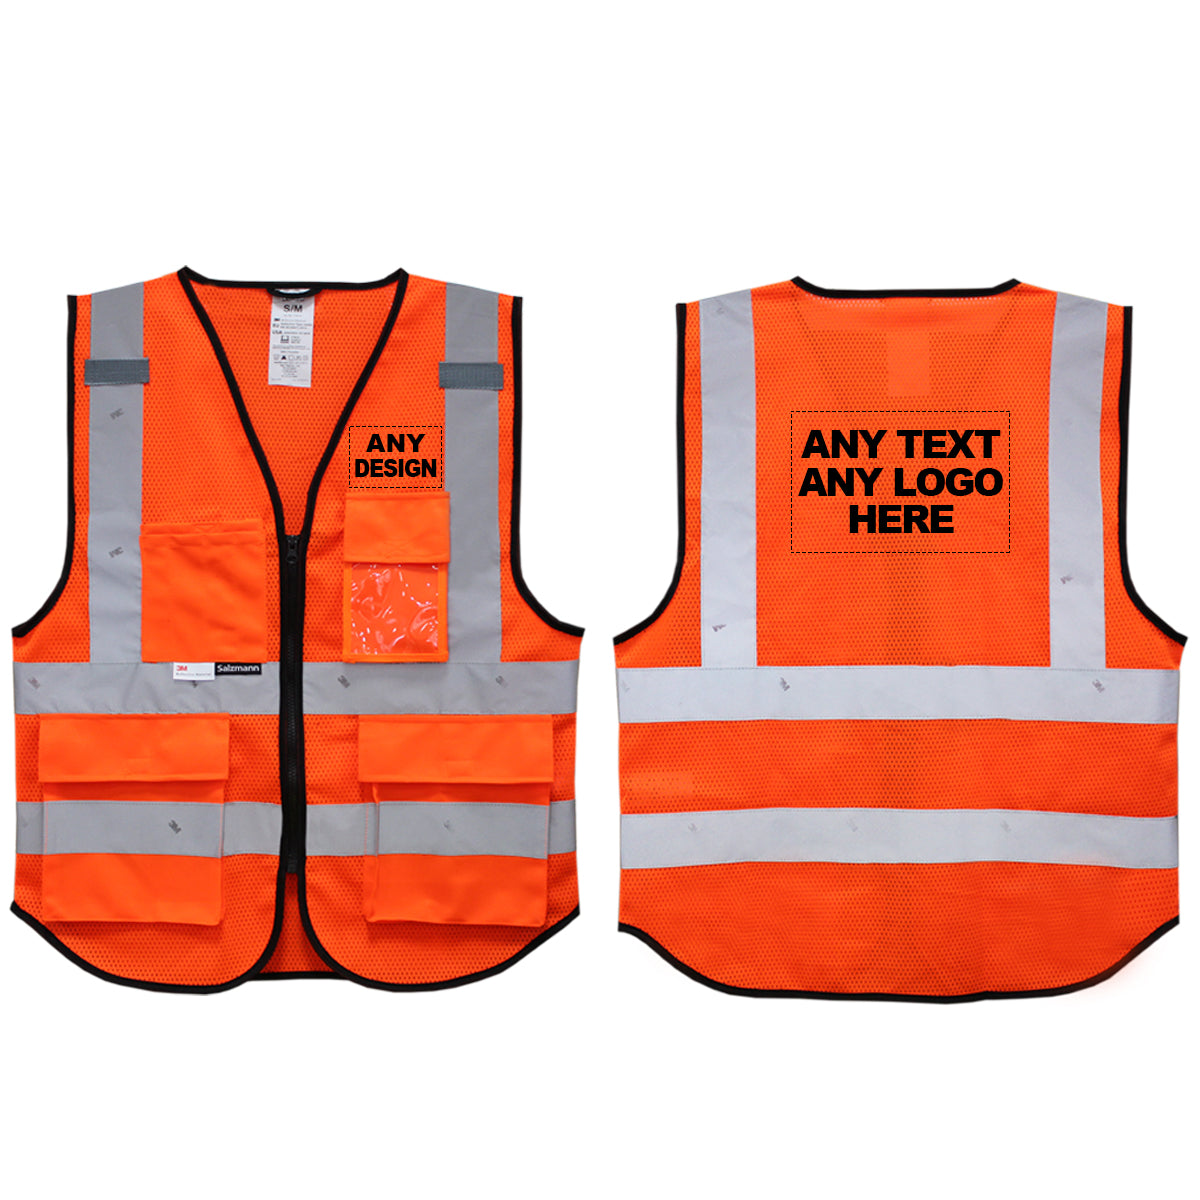 Vorder- und Rückseite einer orangefarbenen Warnweste aus Mesh-Gewebe mit dem Aufdruck "Any text, any logo here"